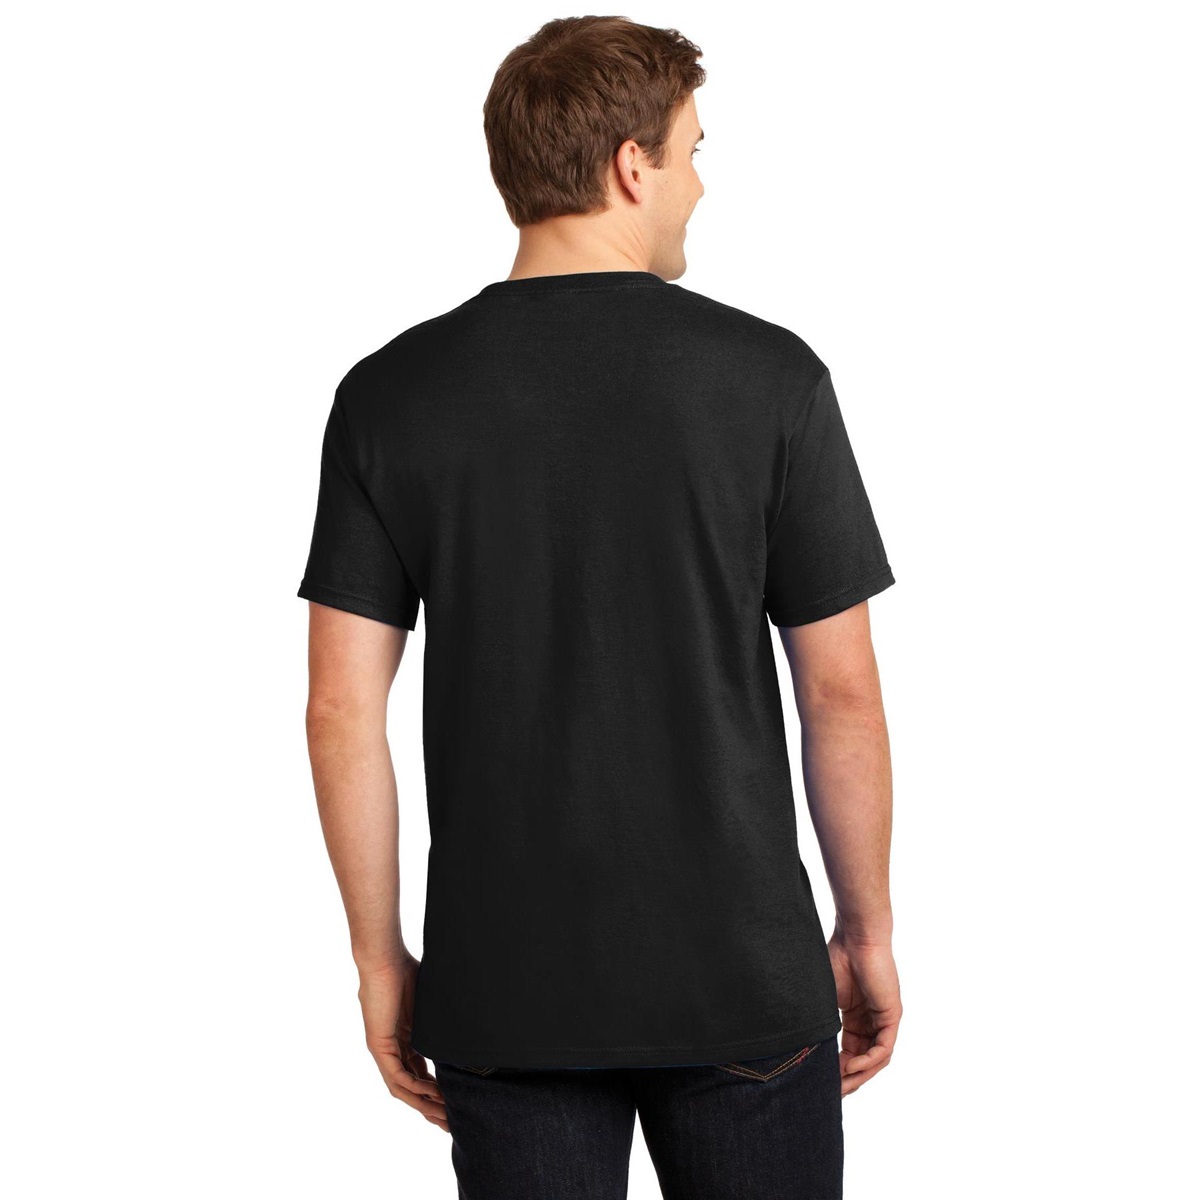 Jerzees 29MP Heavyweight Blend T-Shirt with Pocket - Black | FullSource.com